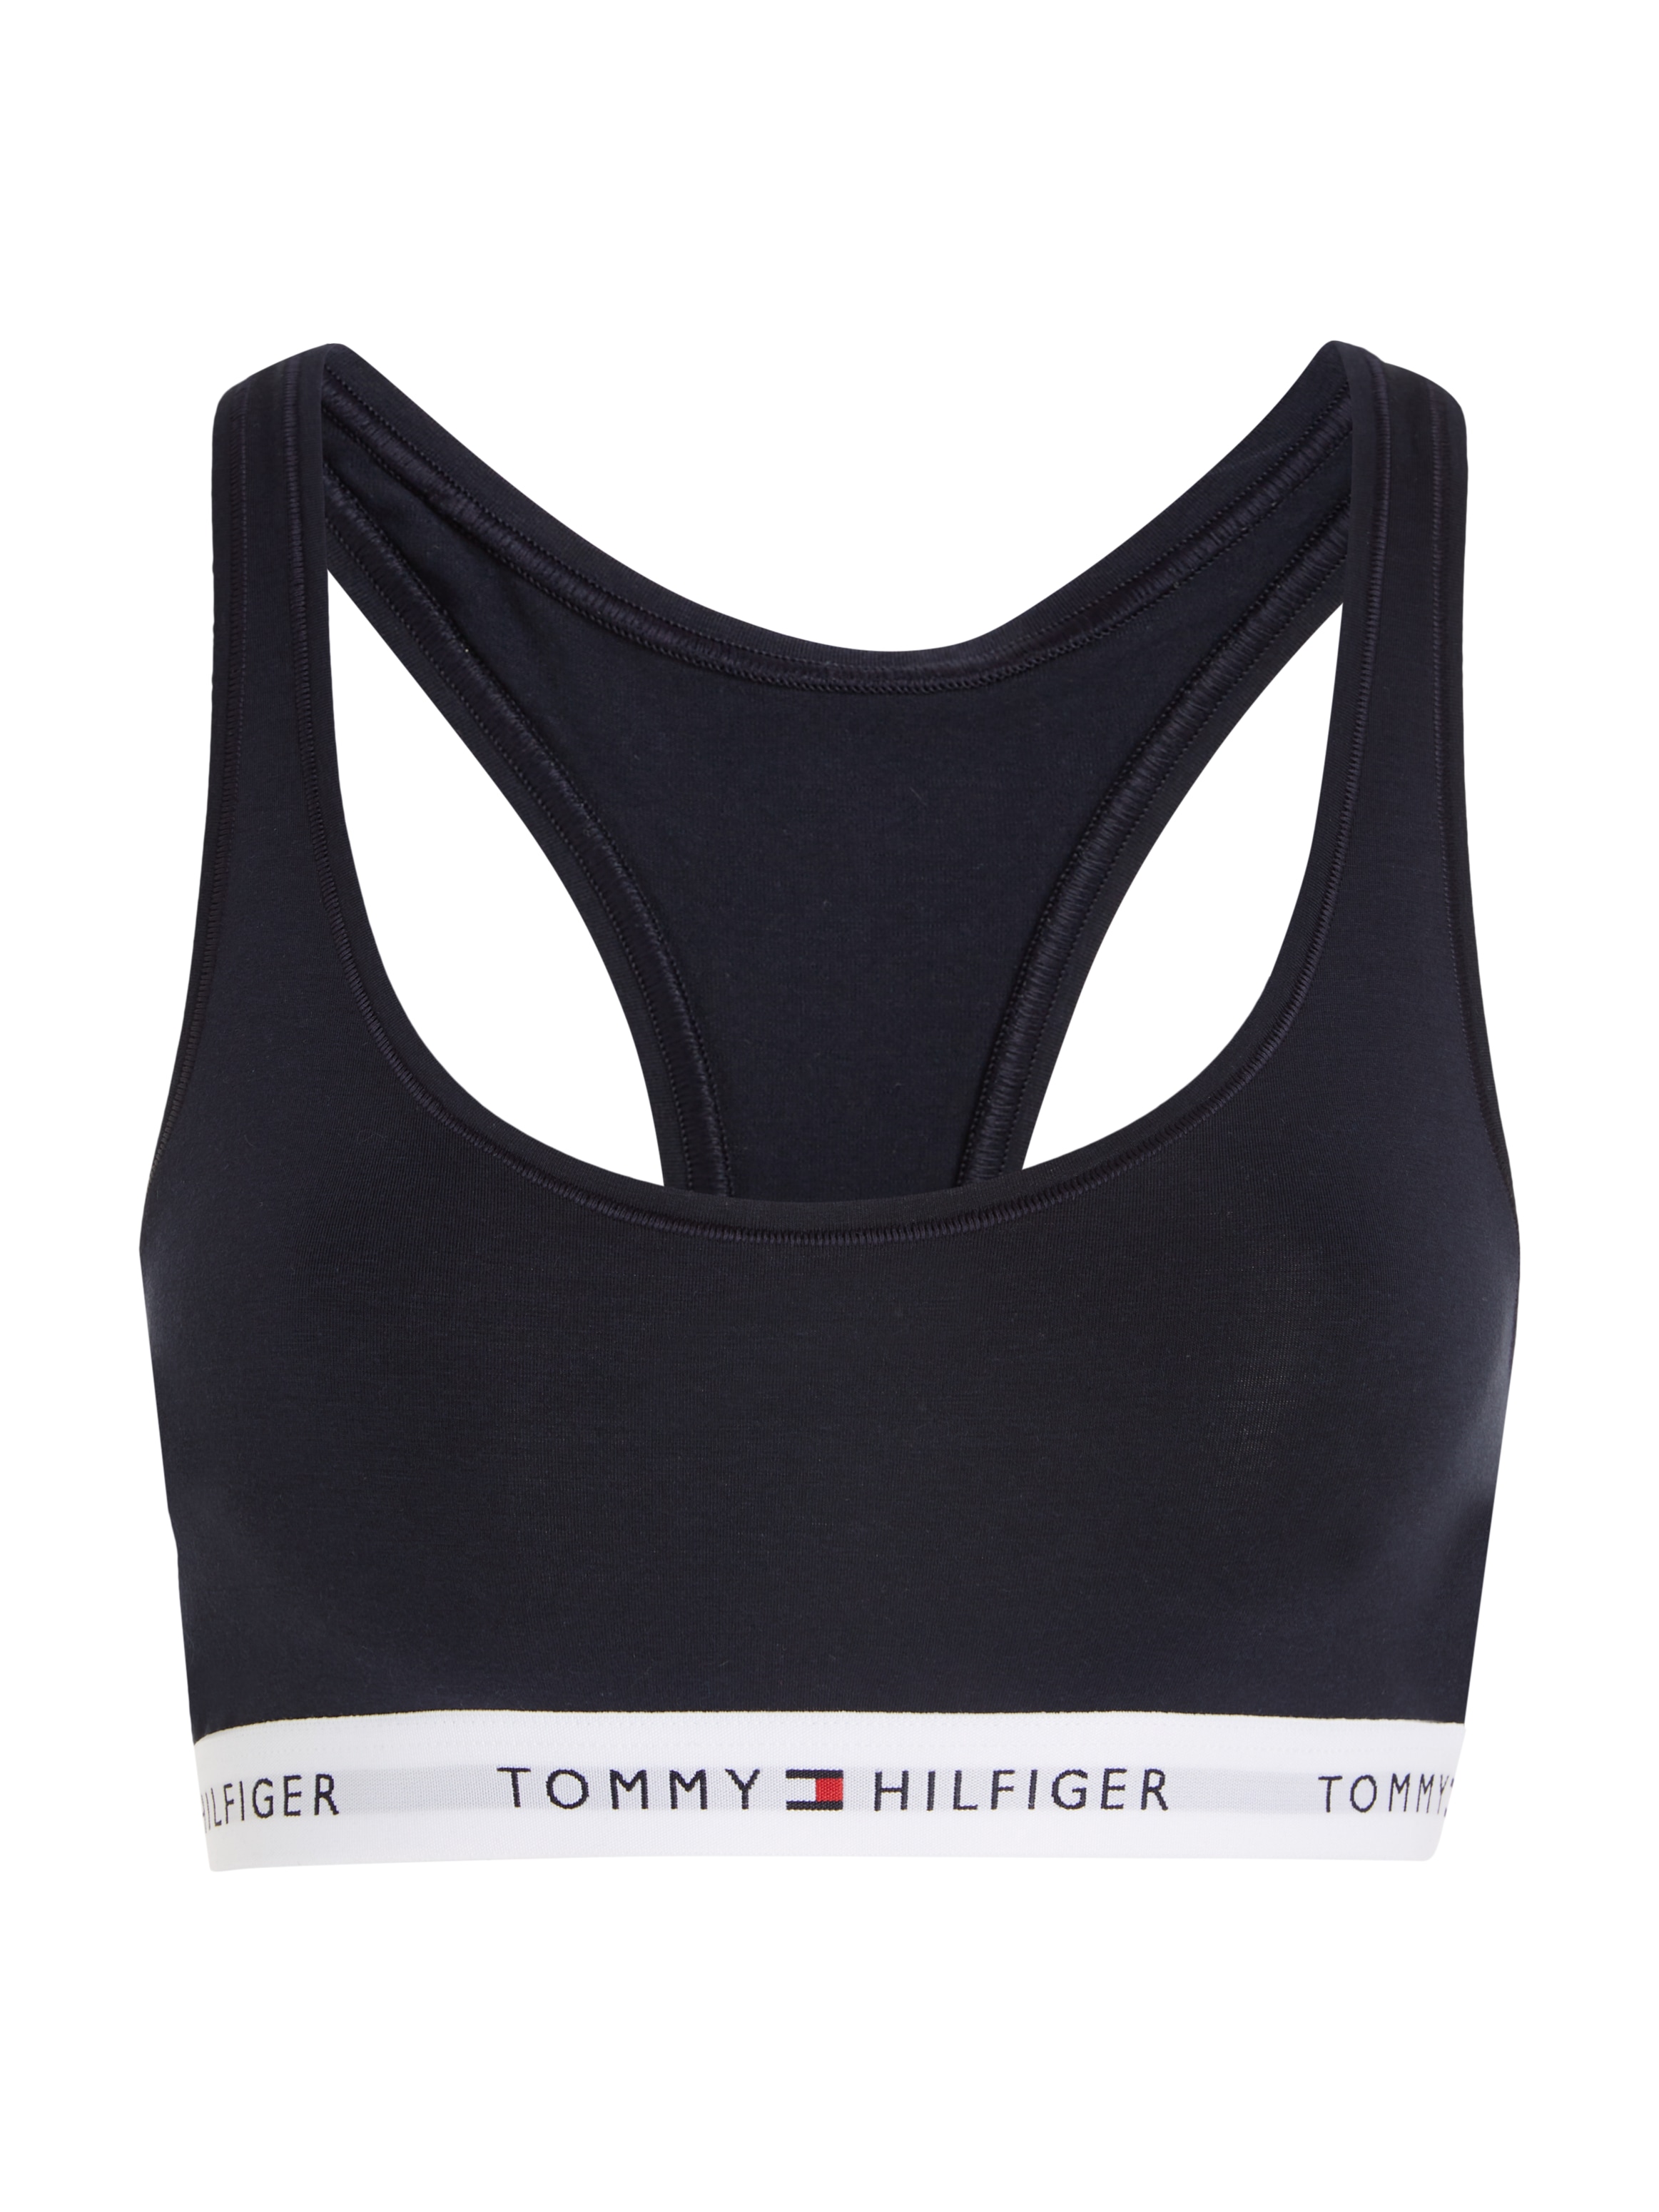 BAUR | Tommy für dem mit Unterbrustband Tommy Hilfiger Sport-Bustier, Underwear Schriftzügen ▷ Hilfiger auf